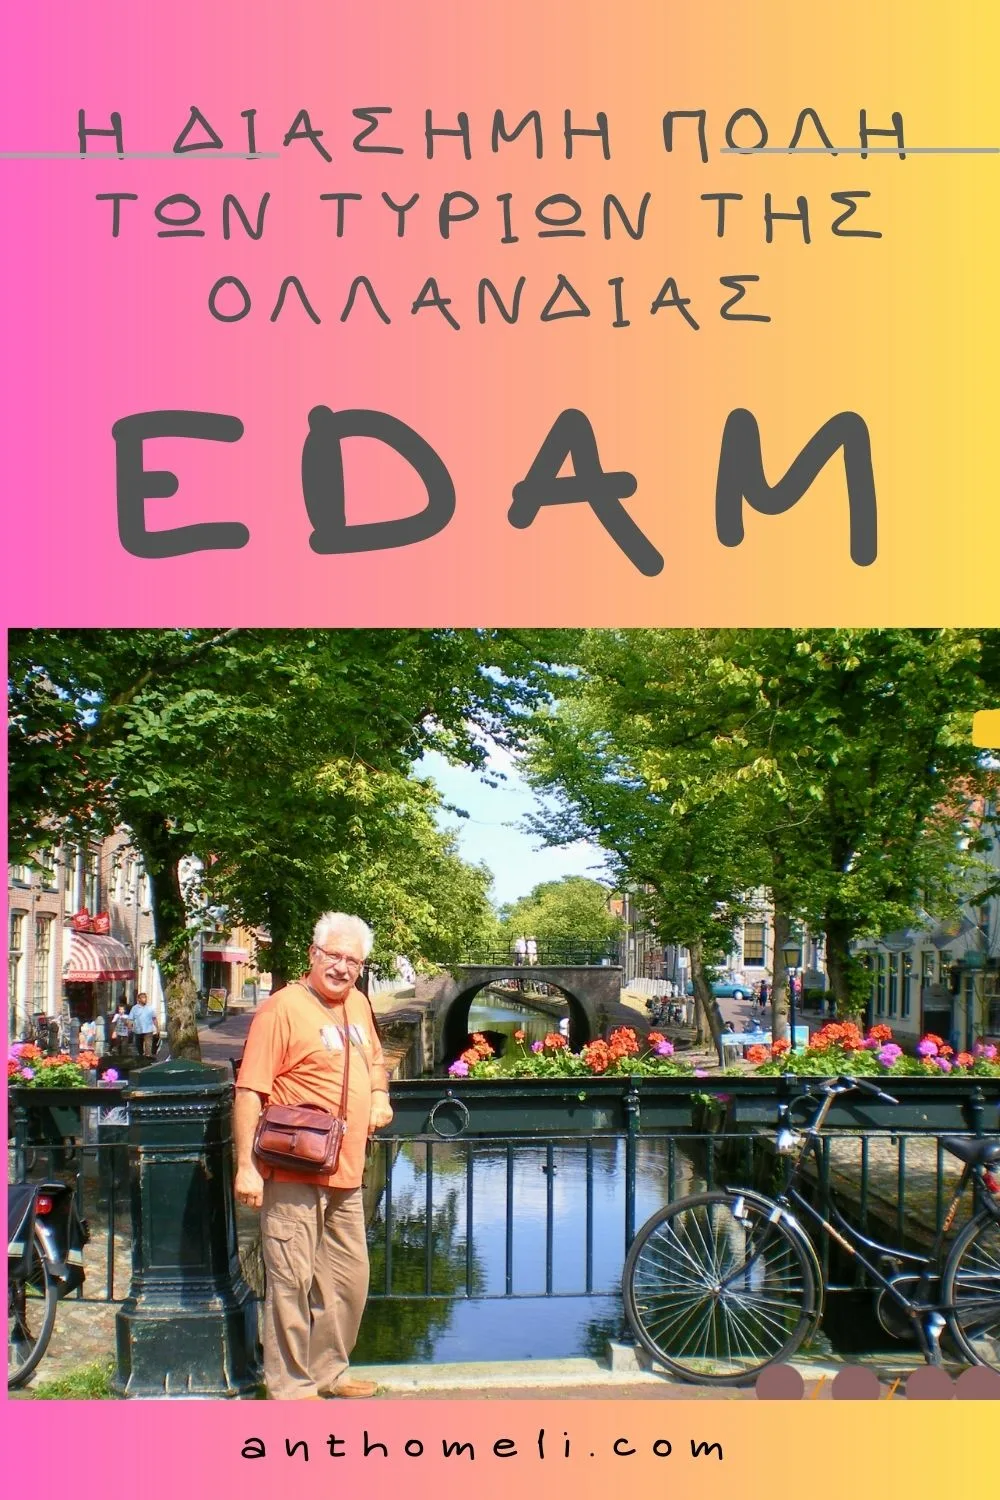 Η πόλη Ένταμ της Ολλανδίας είναι η πόλη που παράγεται το τυρί Ένταμ. Πάμε μαζί μια βόλτα για να γνωρίσουμε τα αξιοθέατα της πόλης.